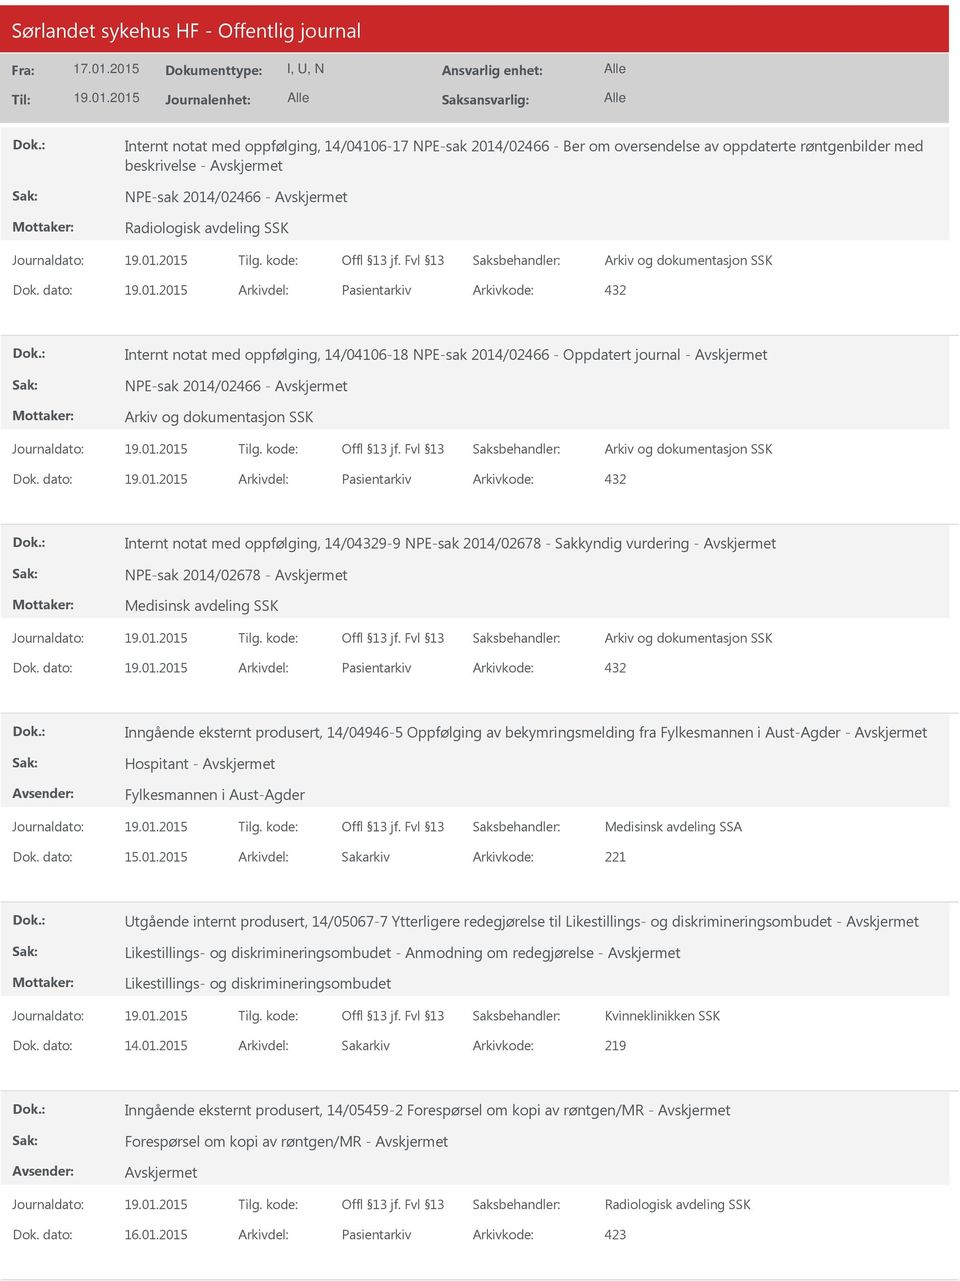 vurdering - NPE-sak 2014/02678 - Medisinsk avdeling SSK Pasientarkiv 432 Inngående eksternt produsert, 14/04946-5 Oppfølging av bekymringsmelding fra Fylkesmannen i Aust-Agder - Hospitant -